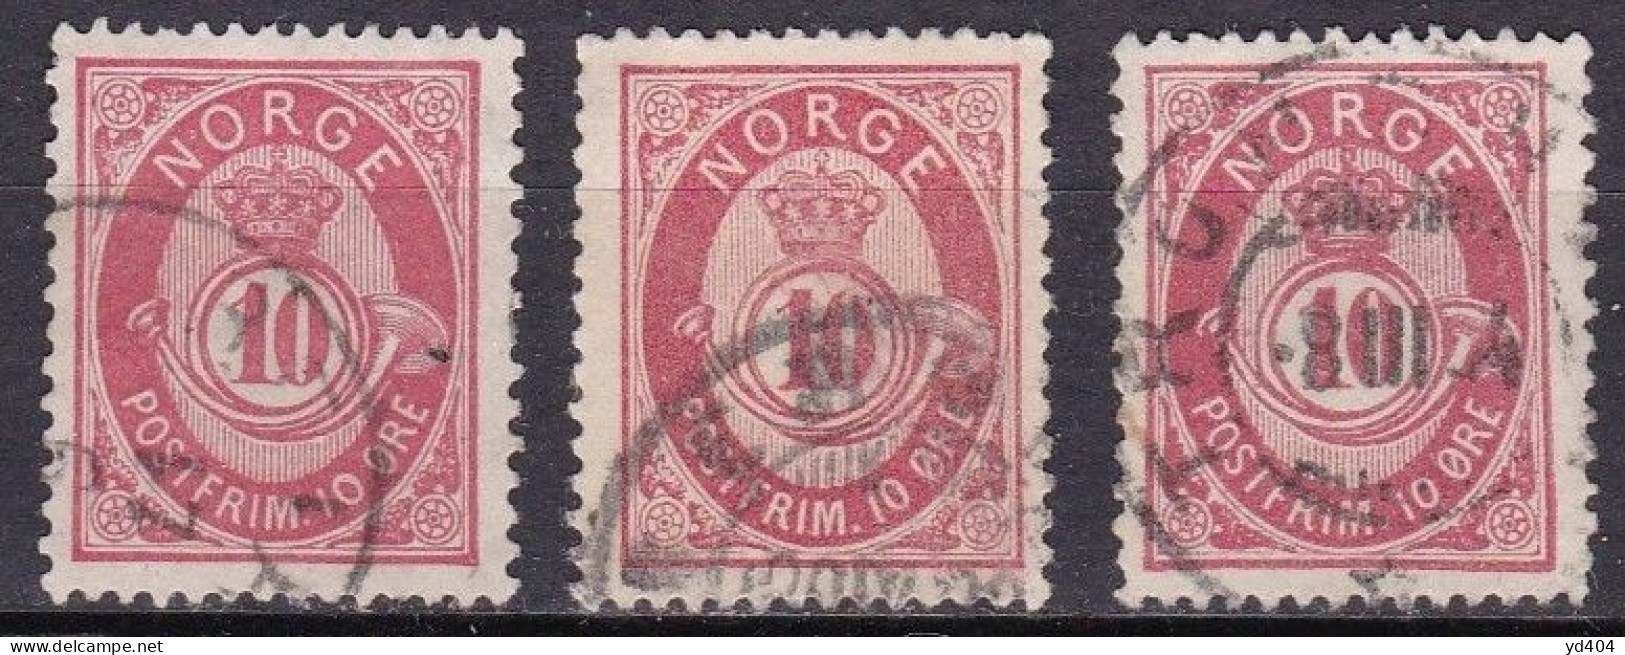 NO005U – NORVEGE - NORWAY – 1882-90 – POST HORN – SC # 40/40a/40b USED - Oblitérés